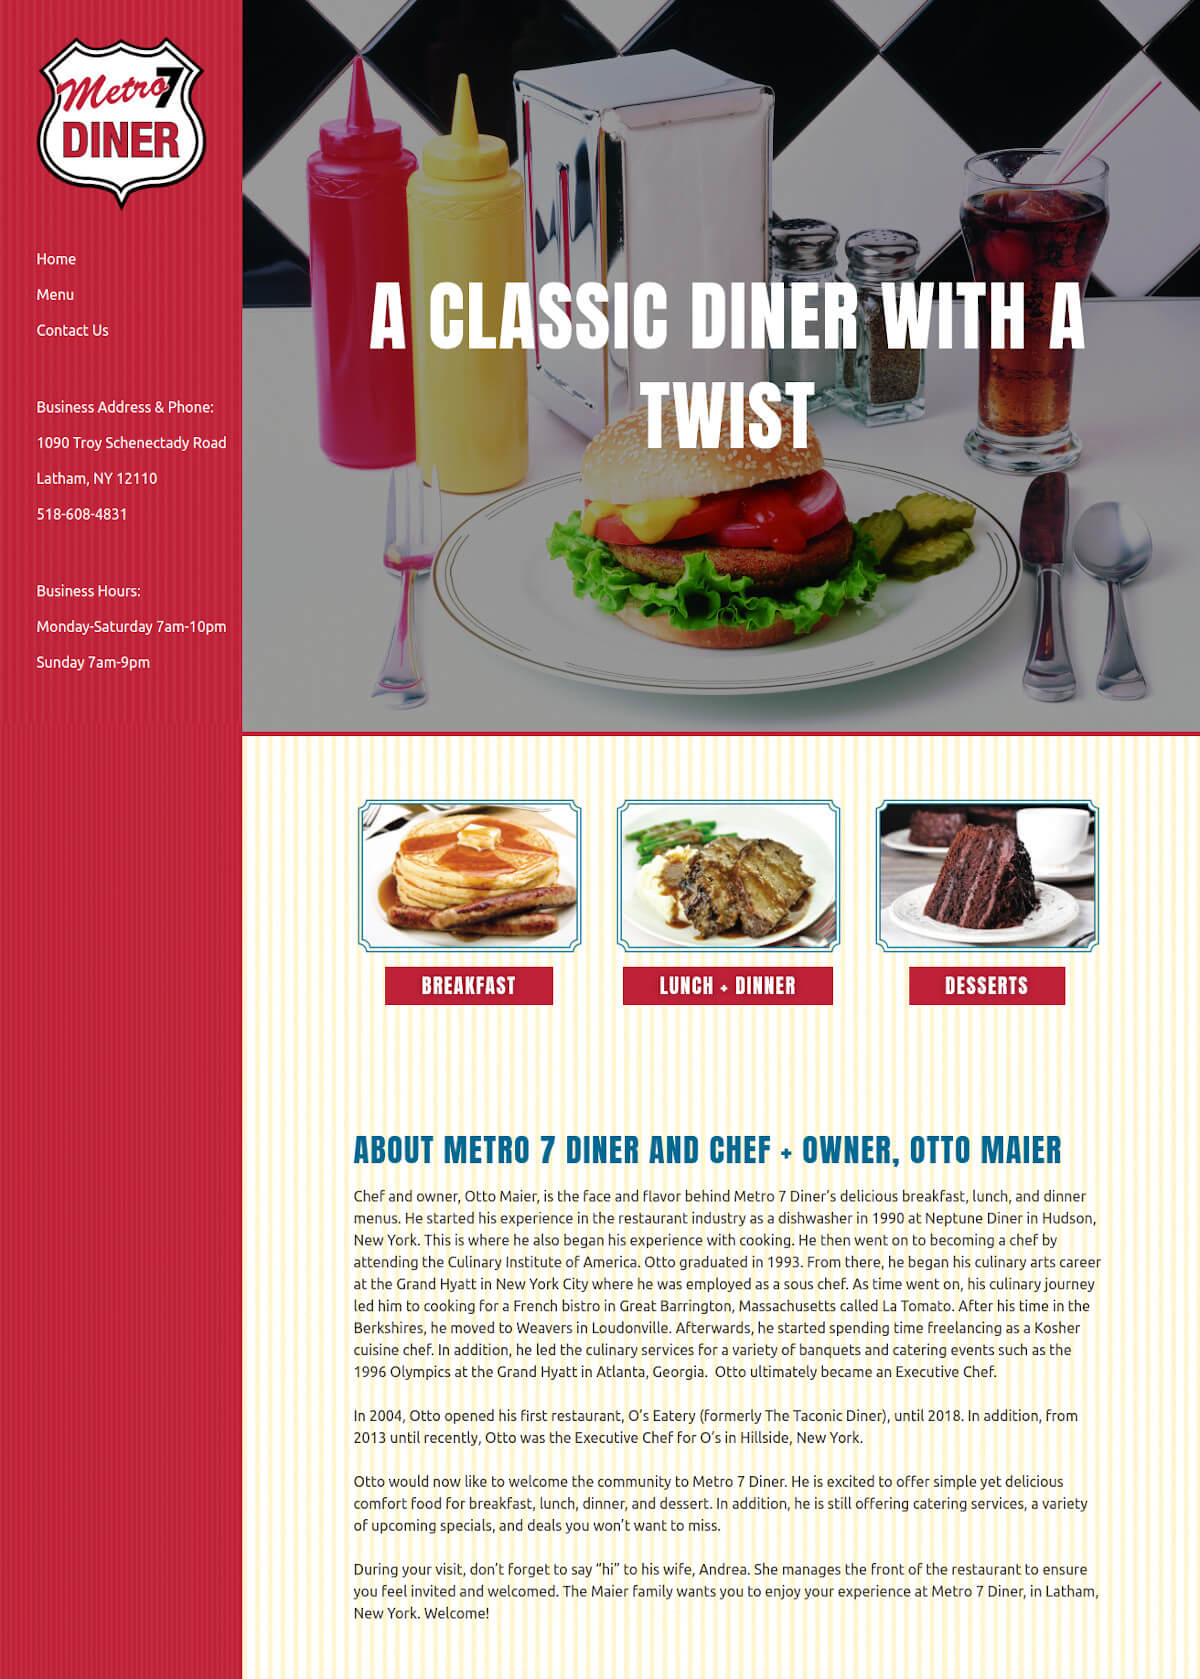 Metro 7 Diner - TLS Mobile Friendly Website